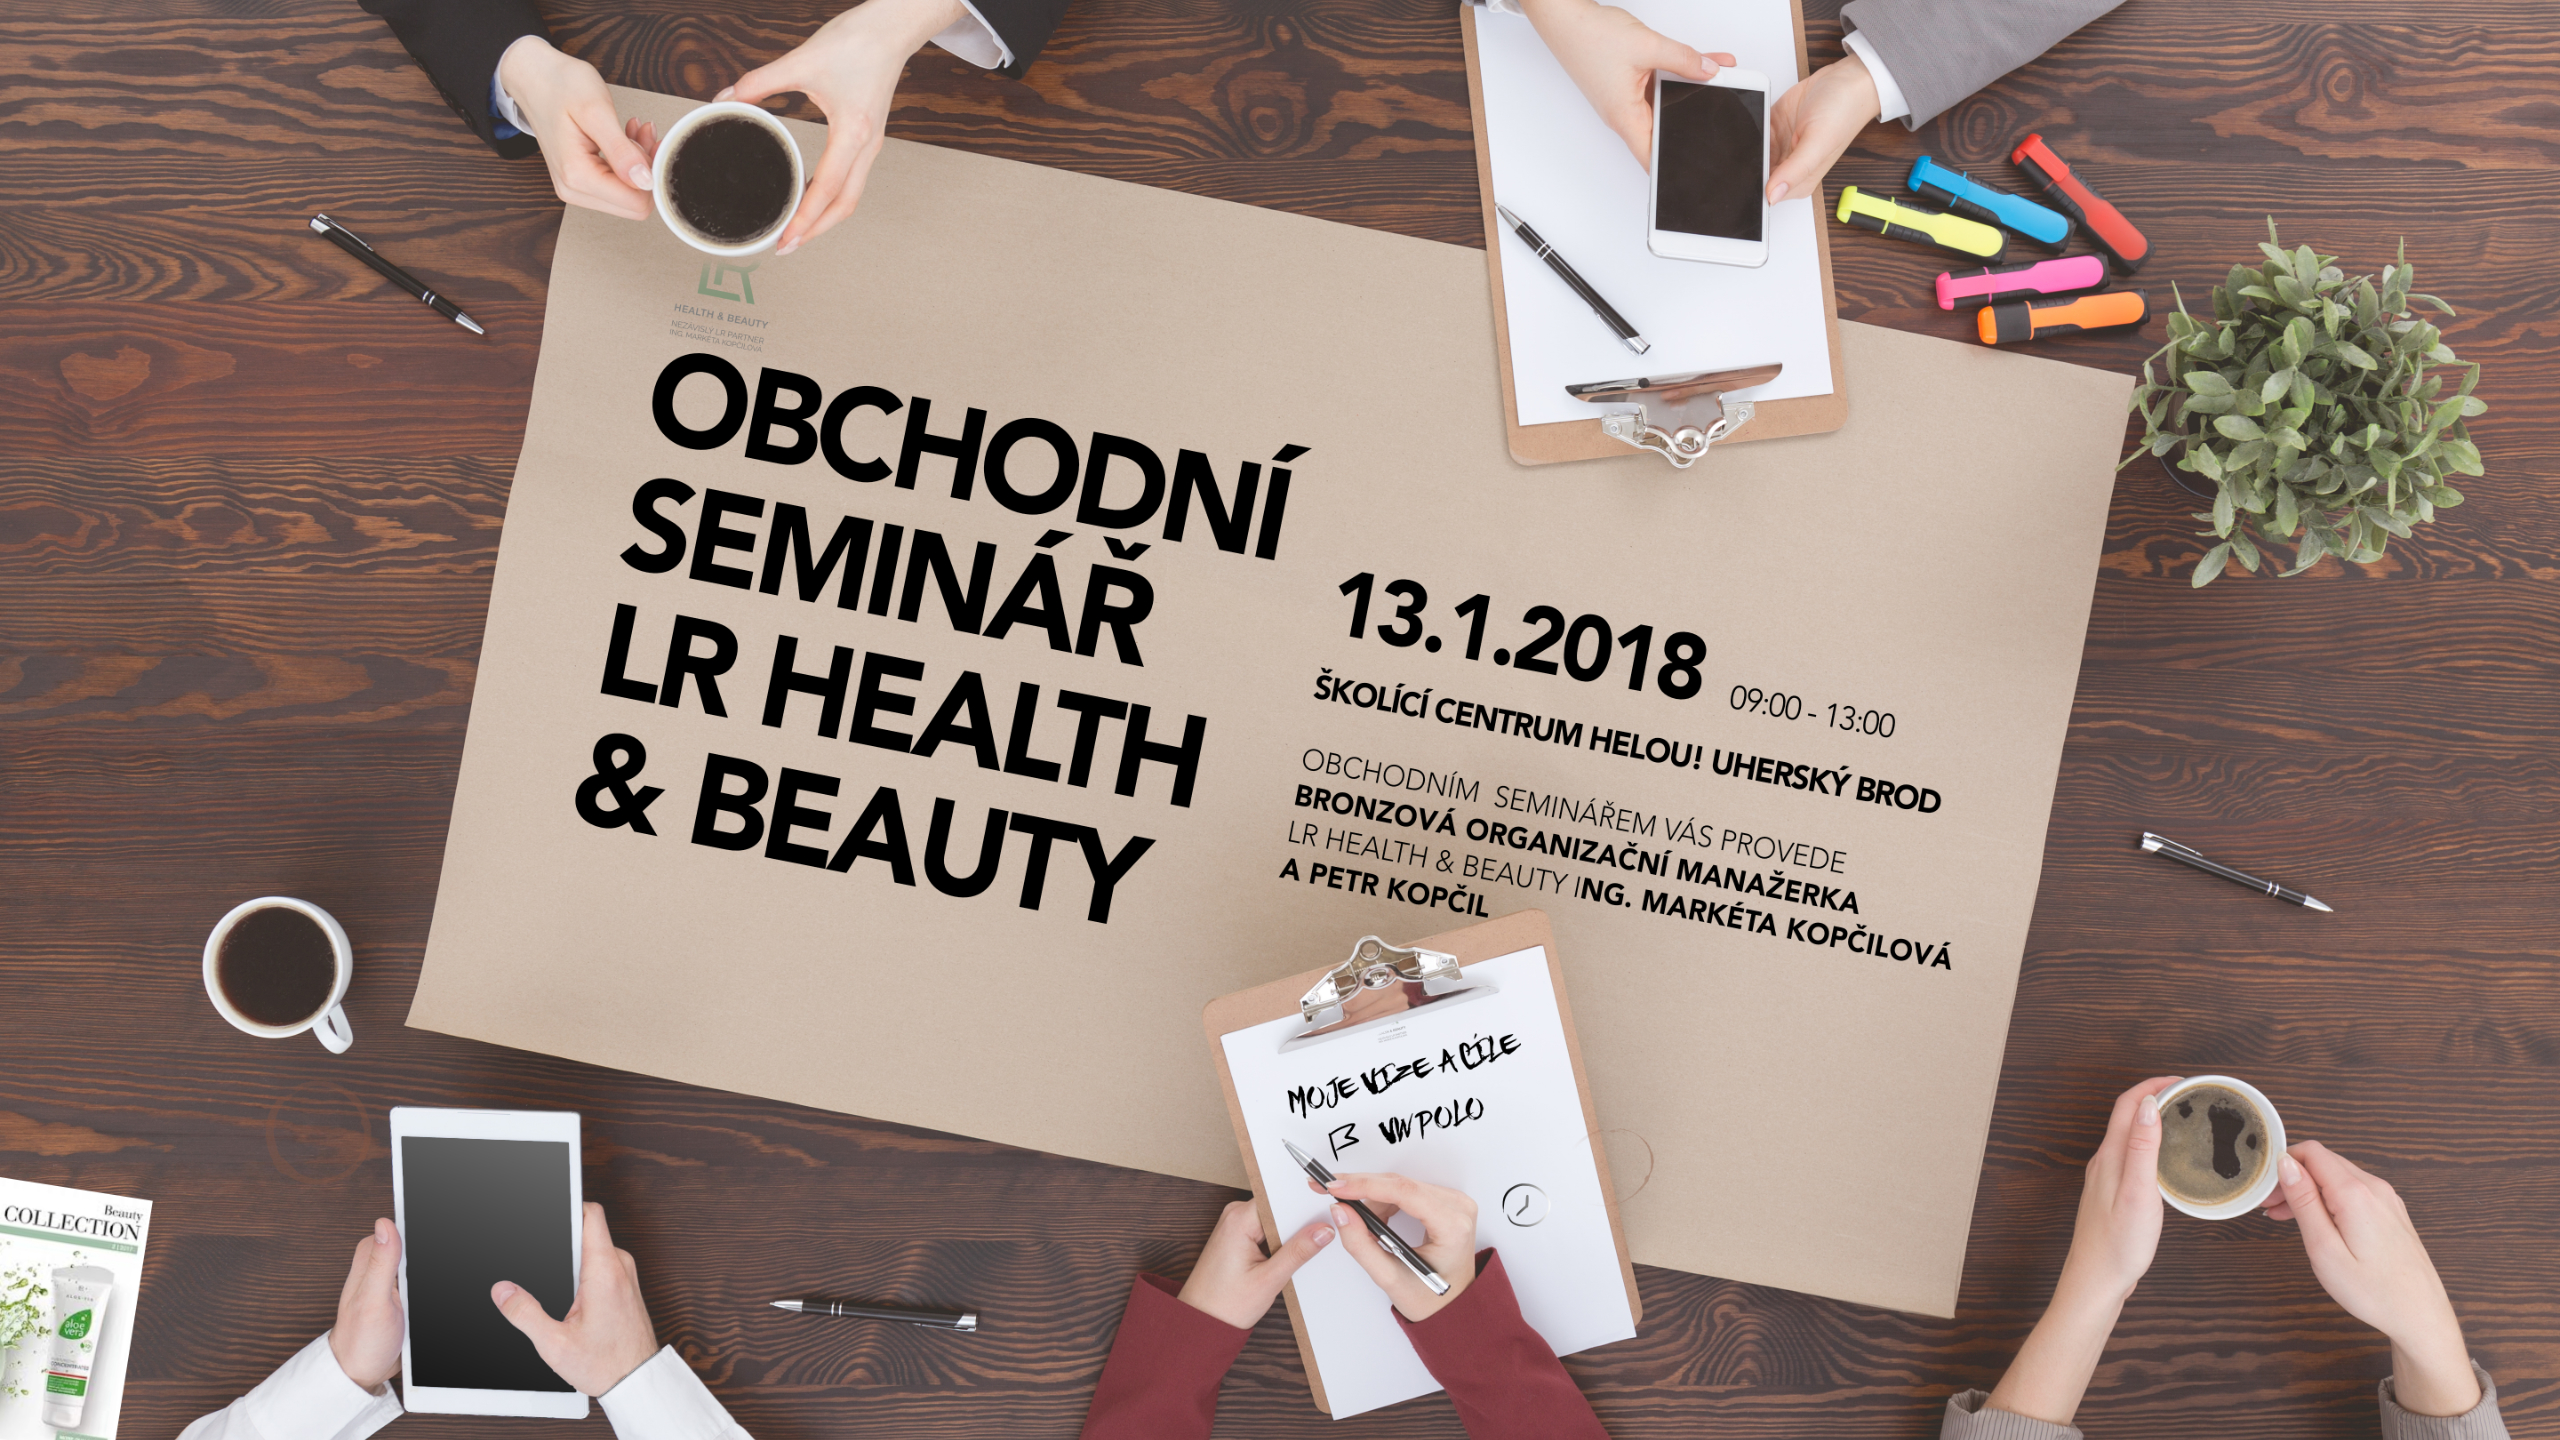 Obchodní seminář  LR Health & Beauty v roce 2018 od Helou!